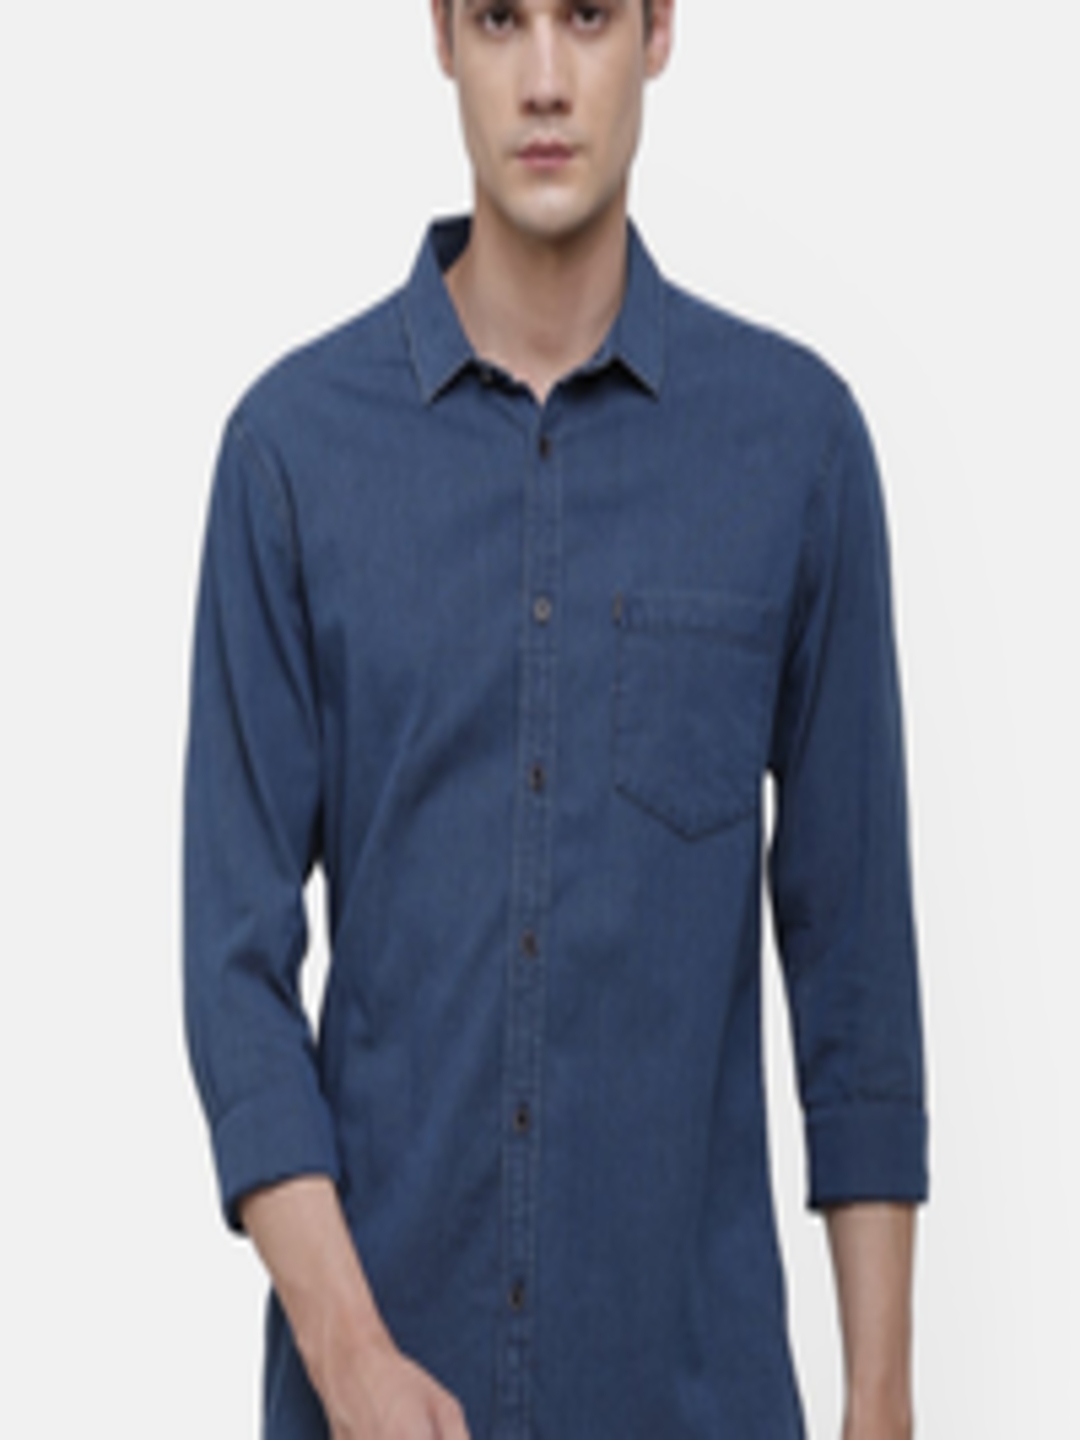 Buy Voi Jeans Men Blue Slim Fit Solid Cotton Casual Denim Shirt ...